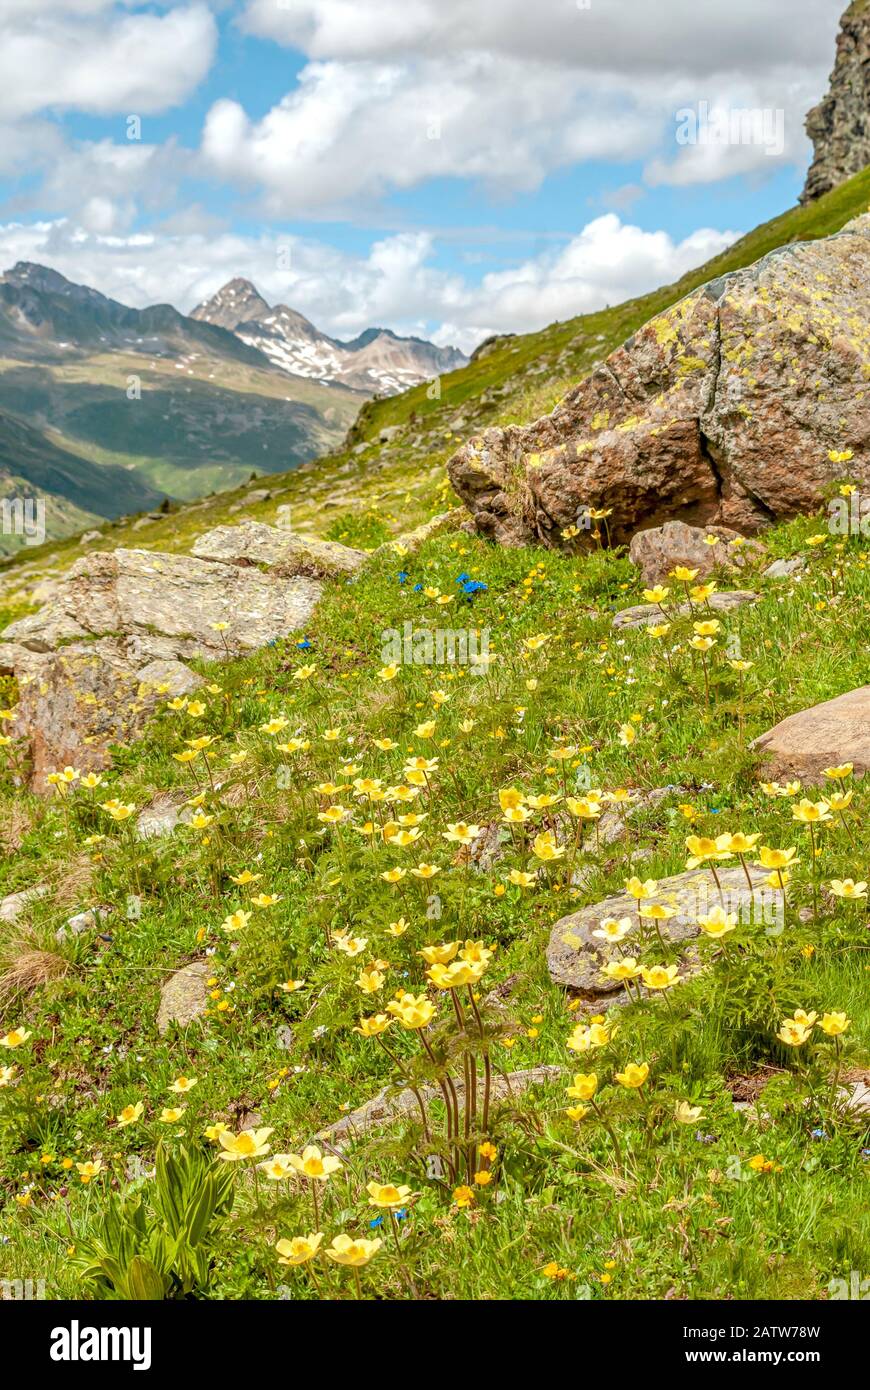 Pré alpin avec racine de clou de girofle jaune fleurs sauvages dans les Alpes suisses, Haute Engadine, Grisons, Suisse Banque D'Images